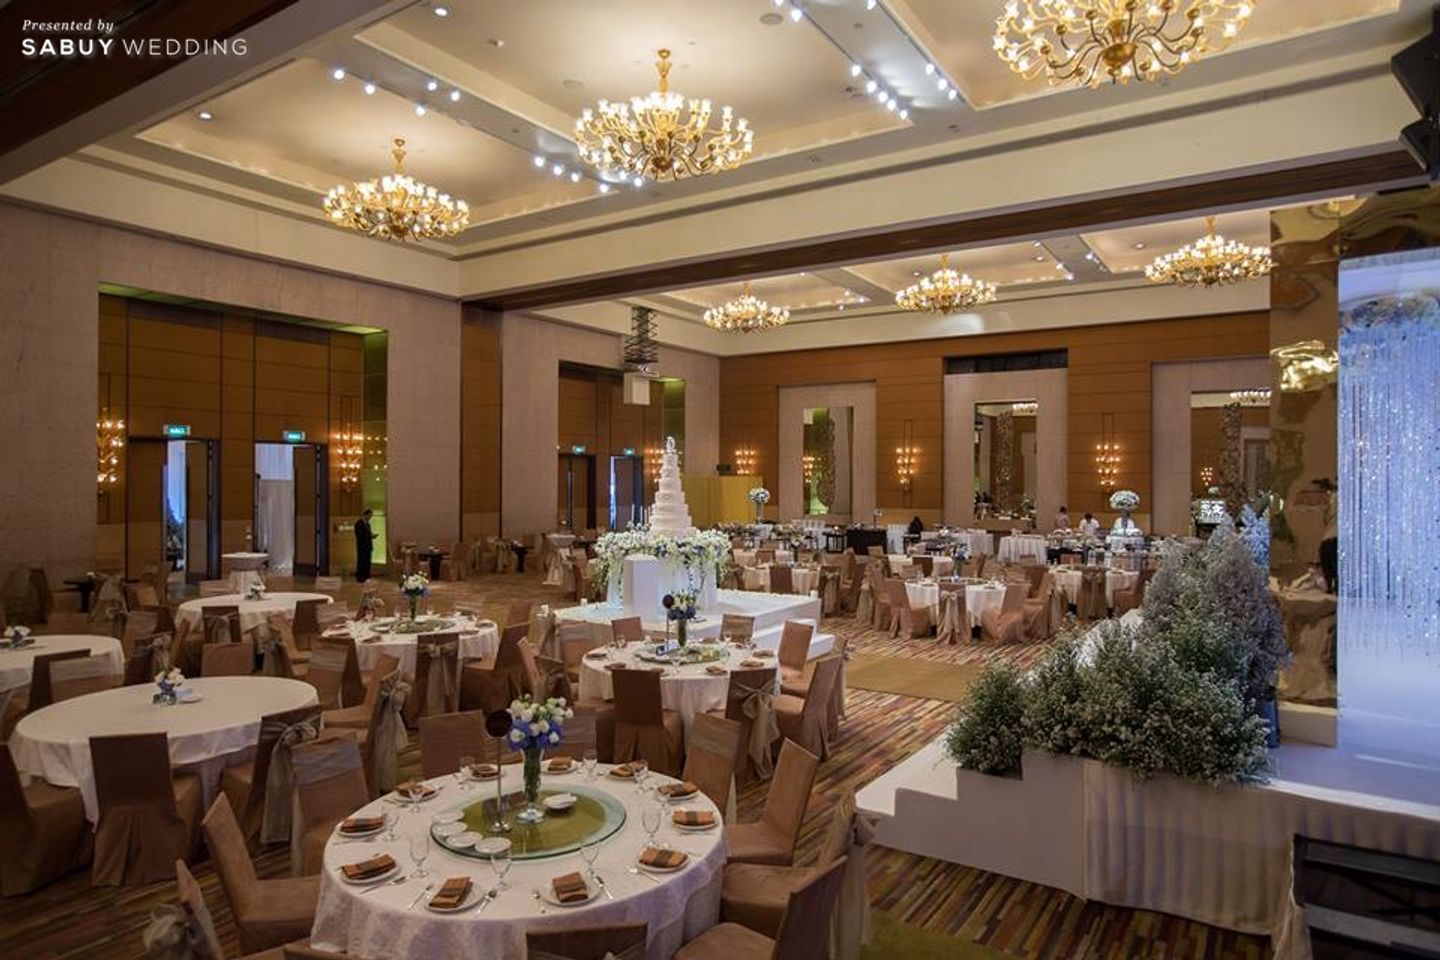 ตกแต่งงานแต่ง,สถานที่แต่งงาน,สถานที่จัดงานแต่งงาน,โรงแรม,รับจัดเลี้ยง "Conrad Bangkok Hotel" ห้องจัดเลี้ยงขนาดใหญ่ ใจกลางเมือง